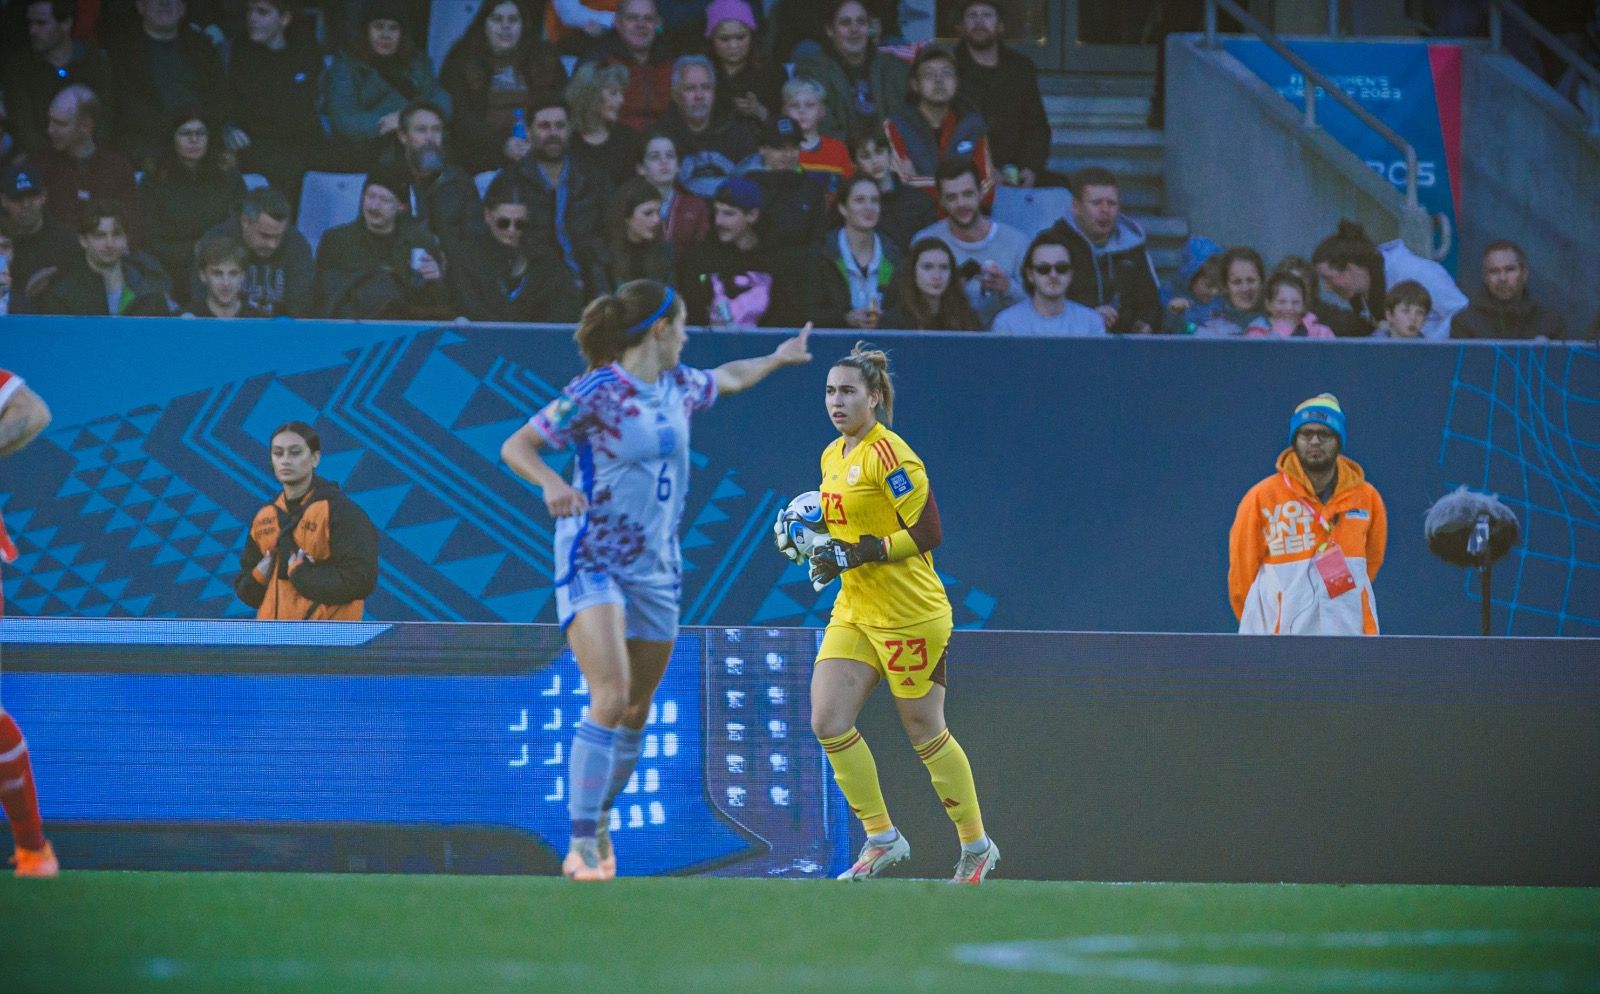 El debut de Cata Coll en el Mundial de fútbolde Australia y Nueva Zelanda, en imágenes